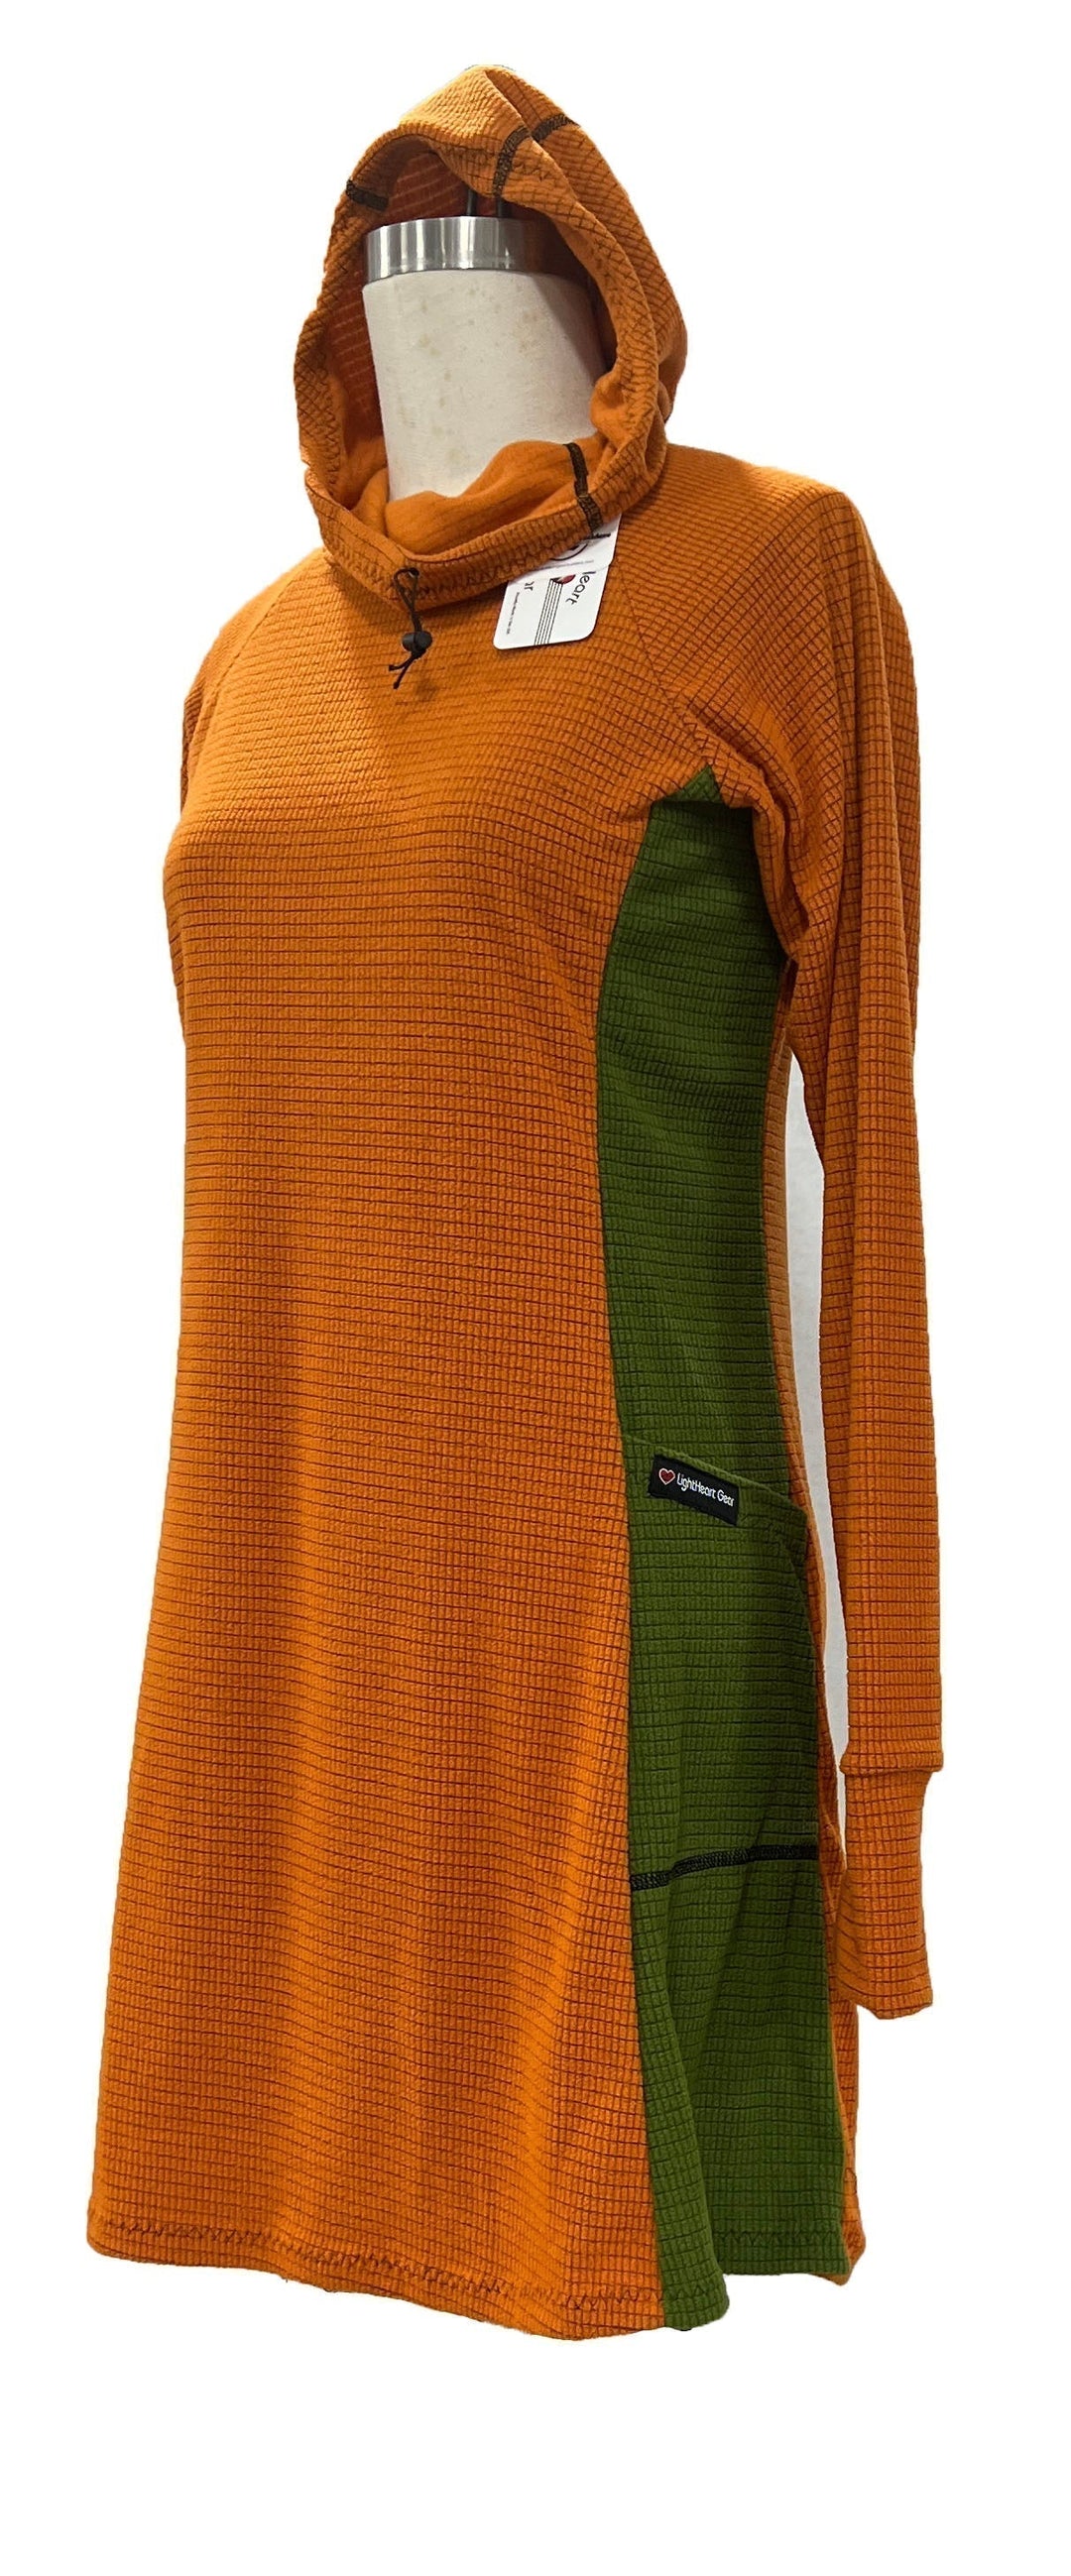 Fleece dress - Orange & Green sides